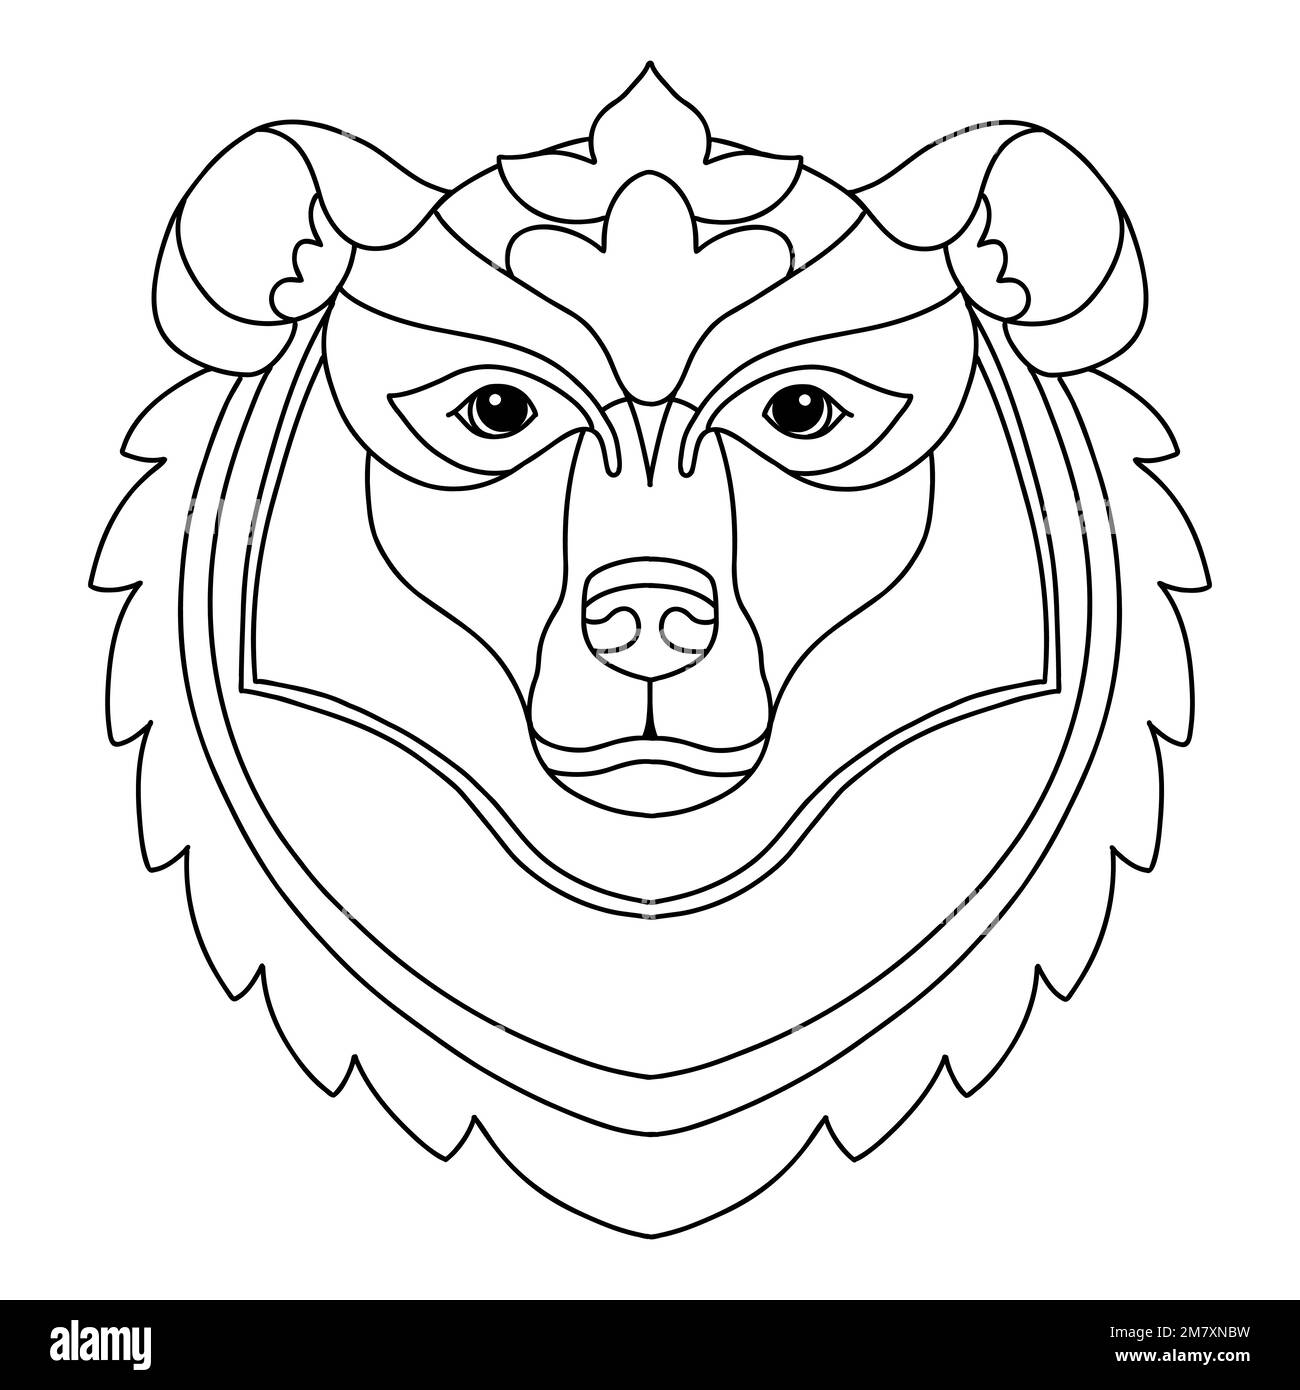 Motif tête d'ours enchevêtrement. Illustration du vecteur de caniche dessiné à la main. Modèle avec formes simples pour créer une couleur décorative complexe. Tête d'animal fr Illustration de Vecteur